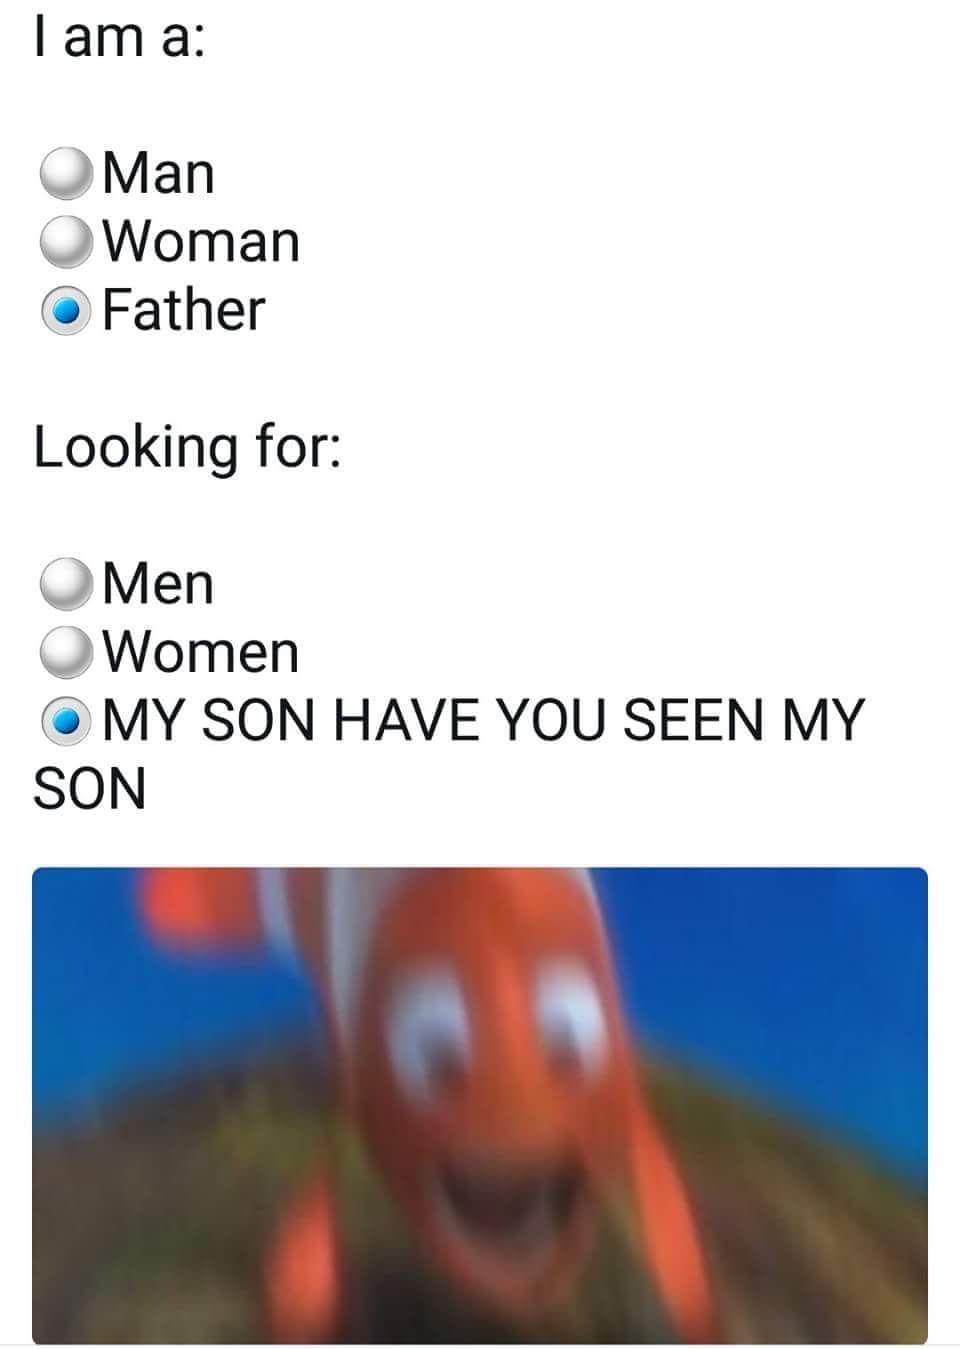 WHERE'S MY SON